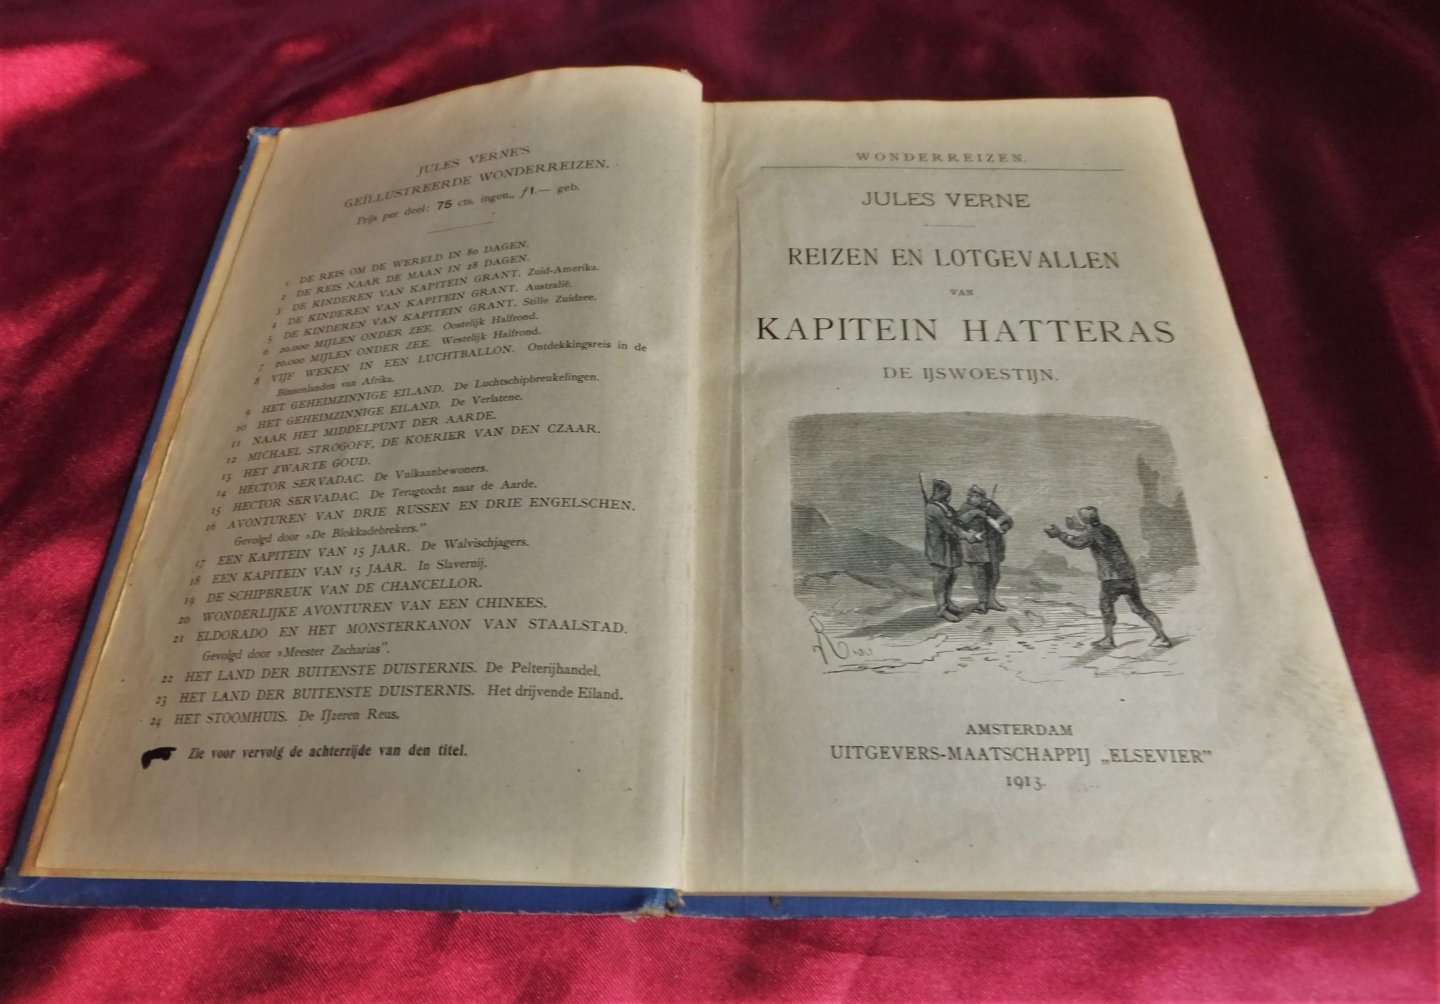 Verne, Jules - Reizen en lotgevallen van Kapitein Hatteras - De ijswoestijn  [1.dr]